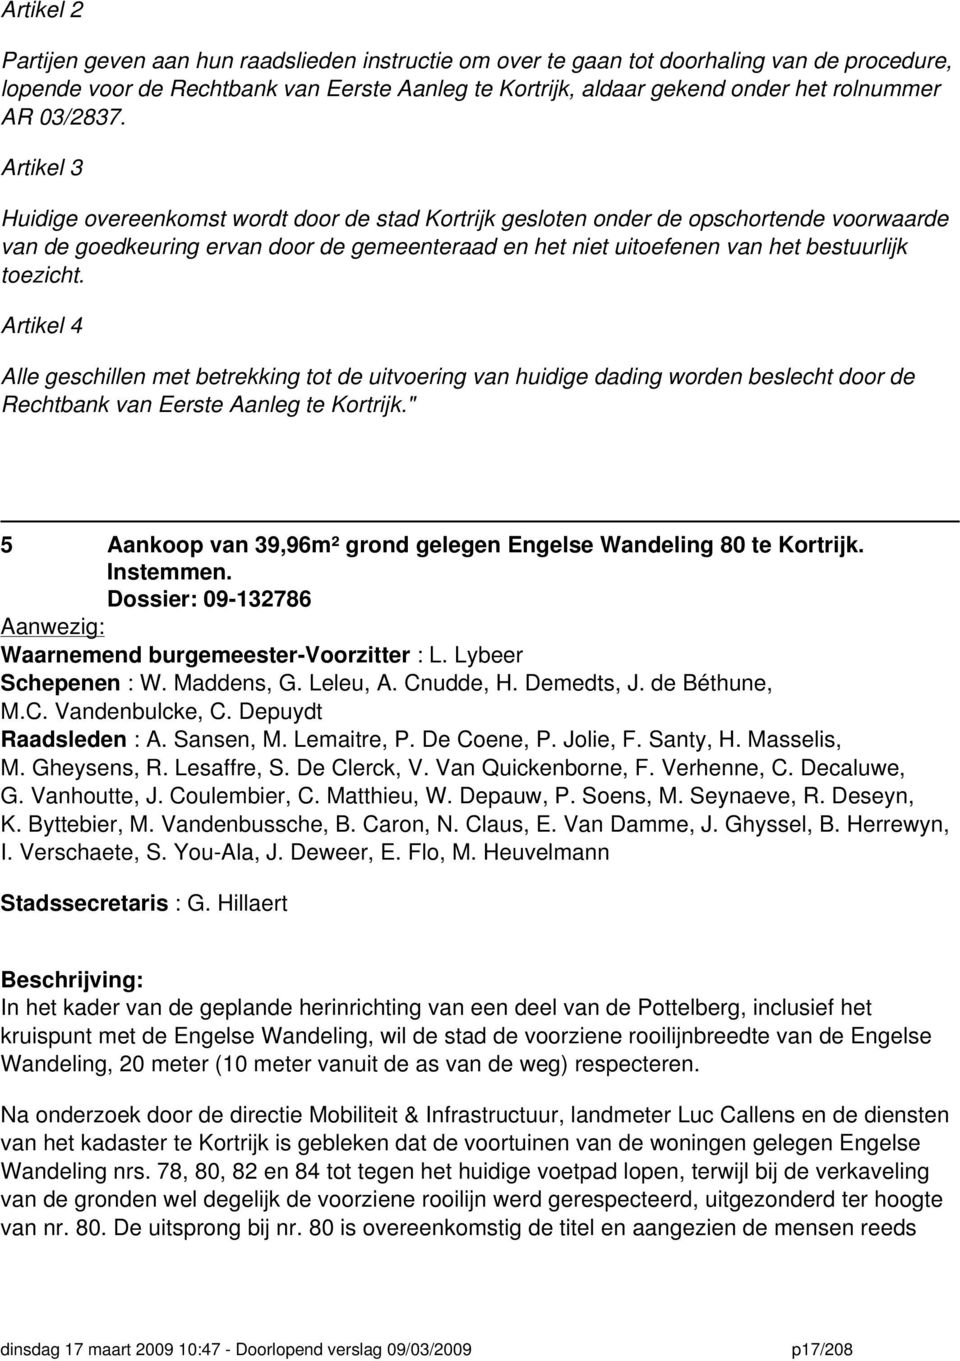 Artikel 3 Huidige overeenkomst wordt door de stad Kortrijk gesloten onder de opschortende voorwaarde van de goedkeuring ervan door de gemeenteraad en het niet uitoefenen van het bestuurlijk toezicht.